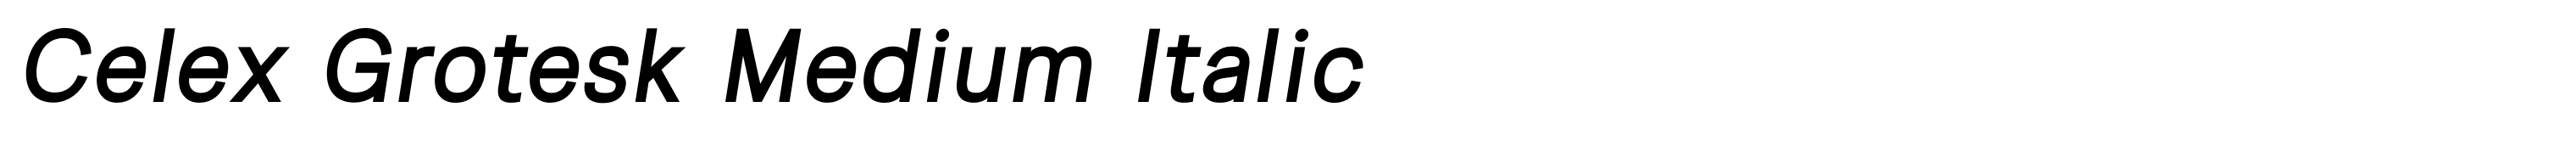 Celex Grotesk Medium Italic